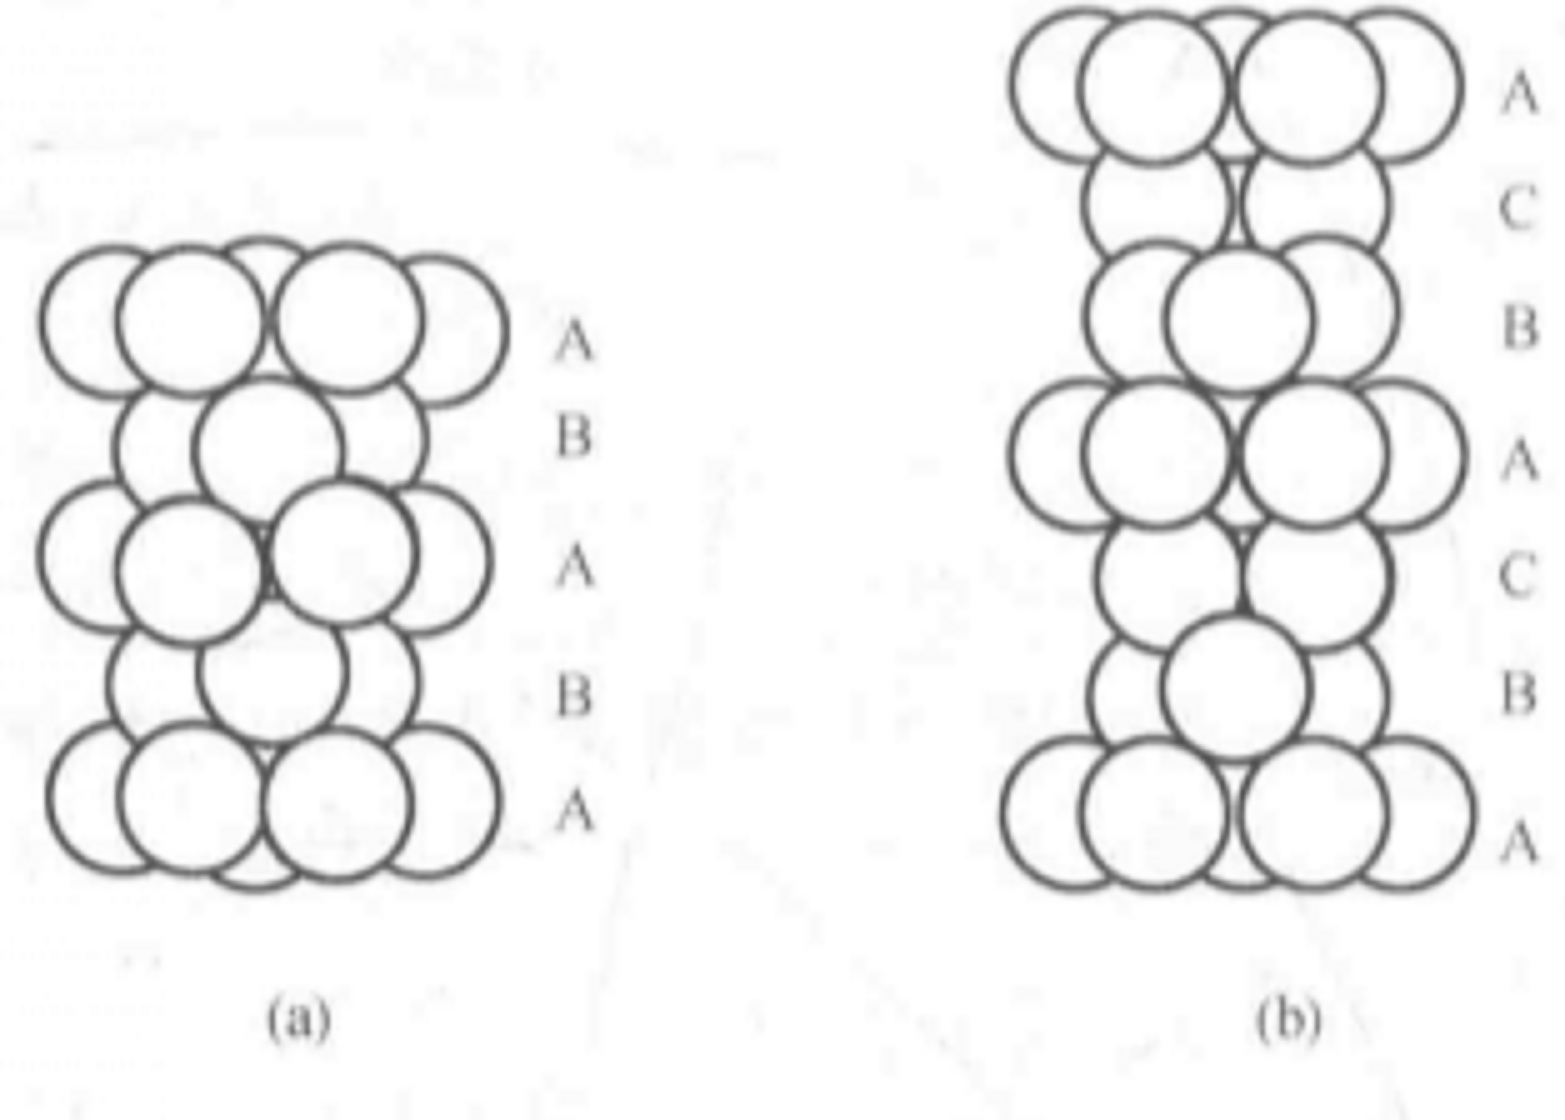 兩種球體緊密堆積方式示意圖  (a)六方緊密堆積(b)立方緊密堆積